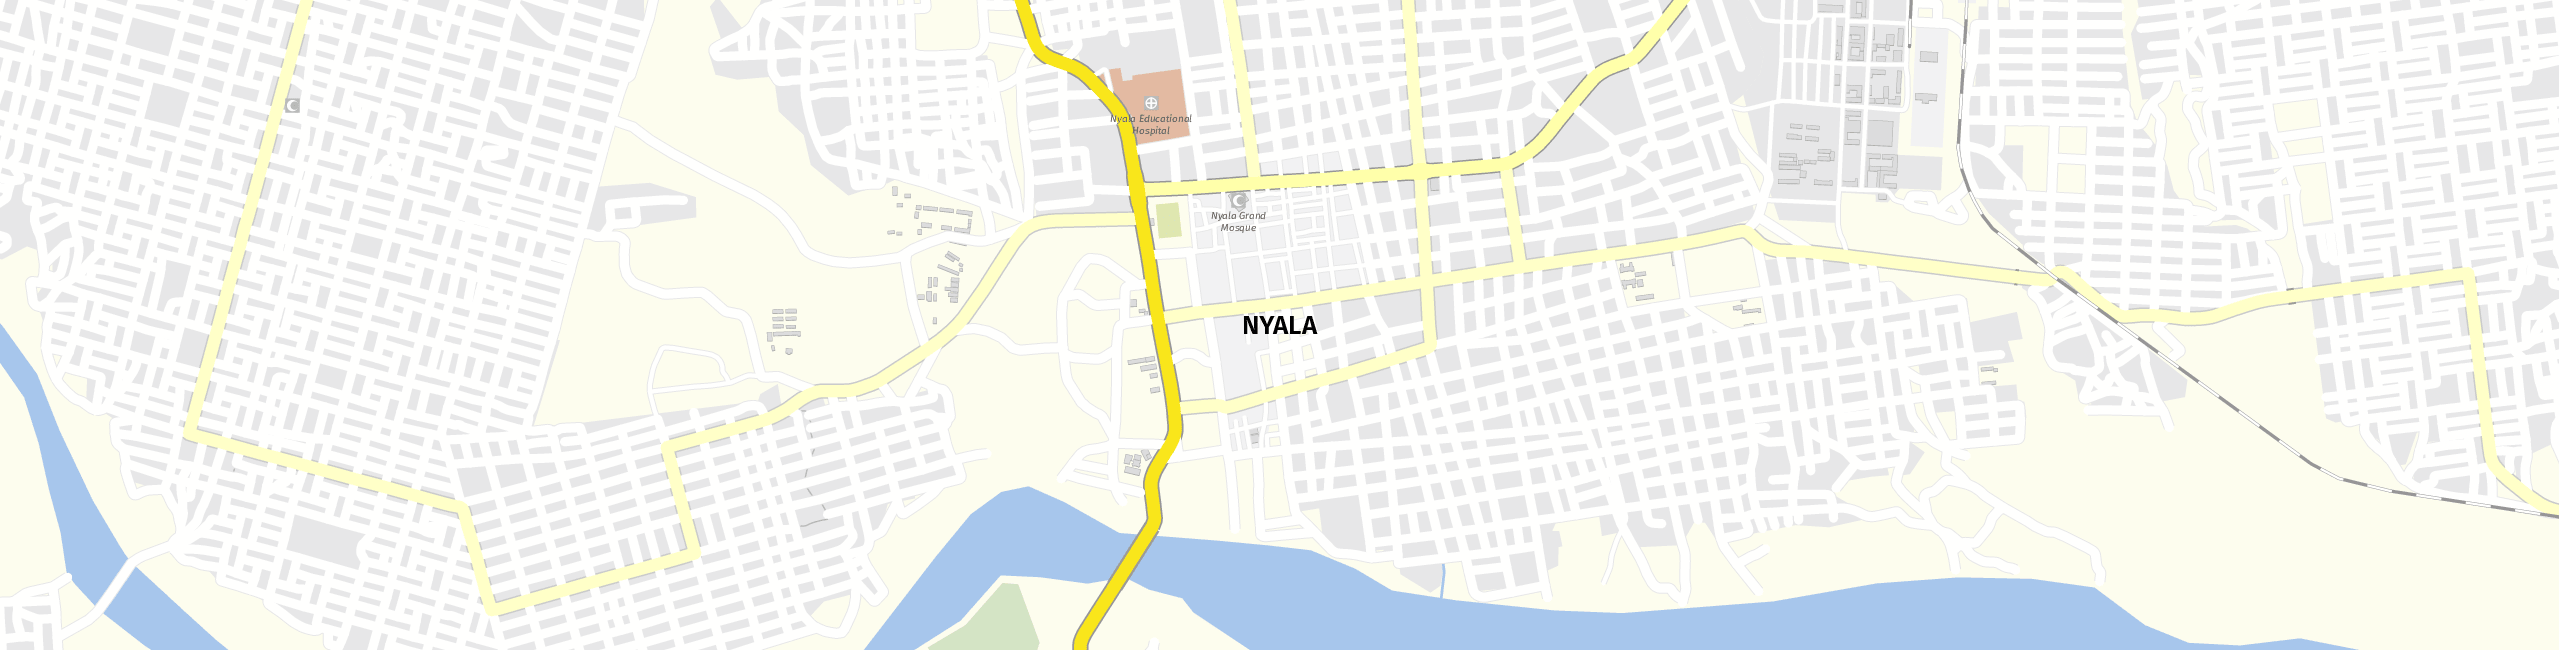 Stadtplan Nyala zum Downloaden.